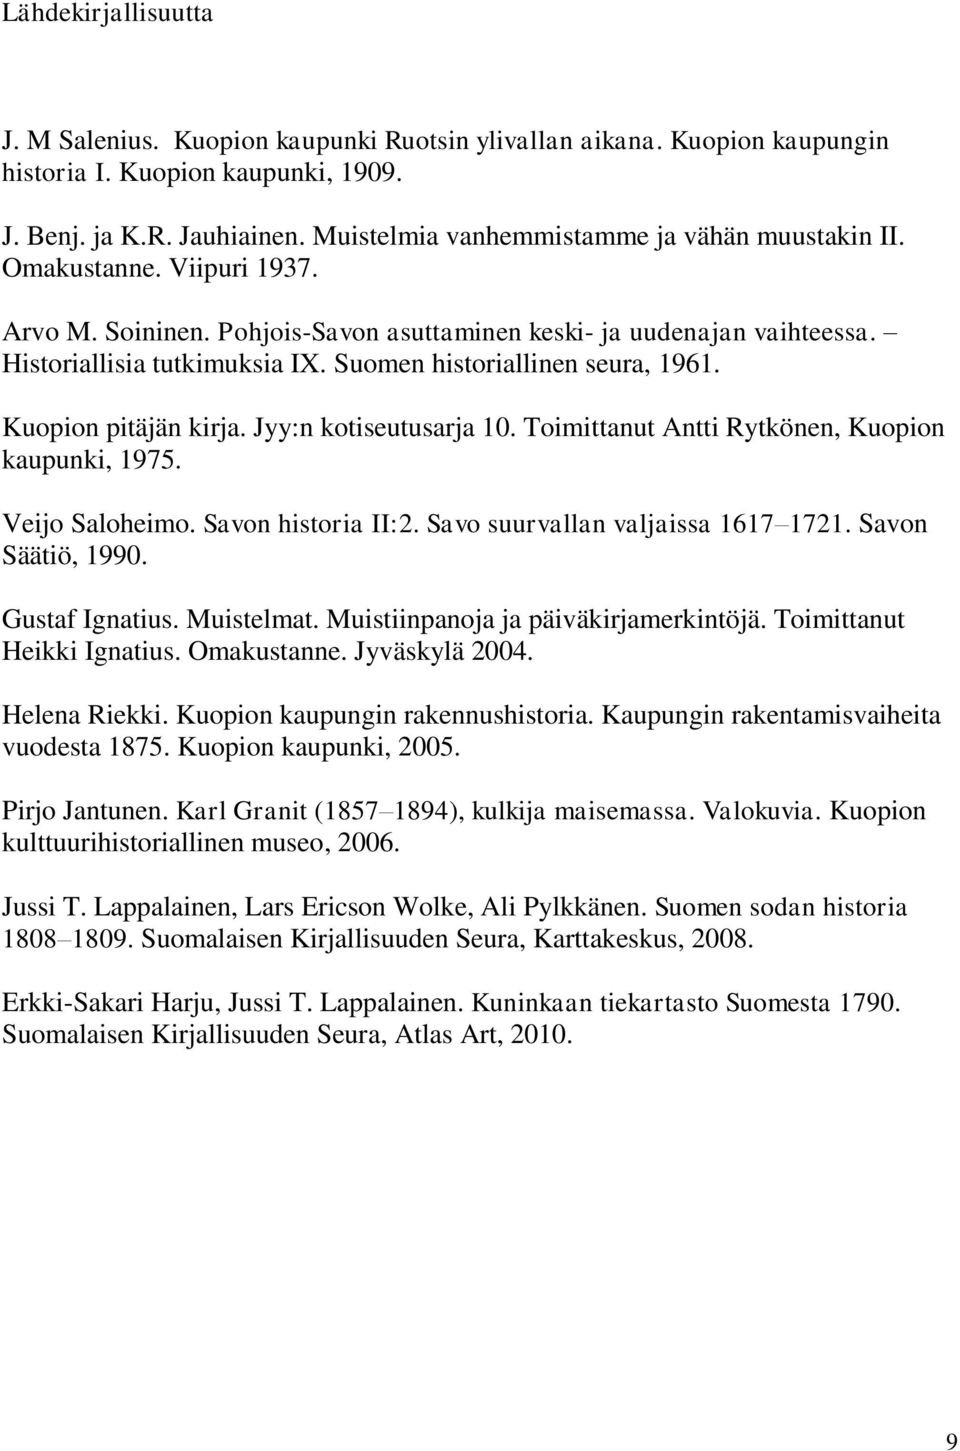 Suomen historiallinen seura, 1961. Kuopion pitäjän kirja. Jyy:n kotiseutusarja 10. Toimittanut Antti Rytkönen, Kuopion kaupunki, 1975. Veijo Saloheimo. Savon historia II:2.